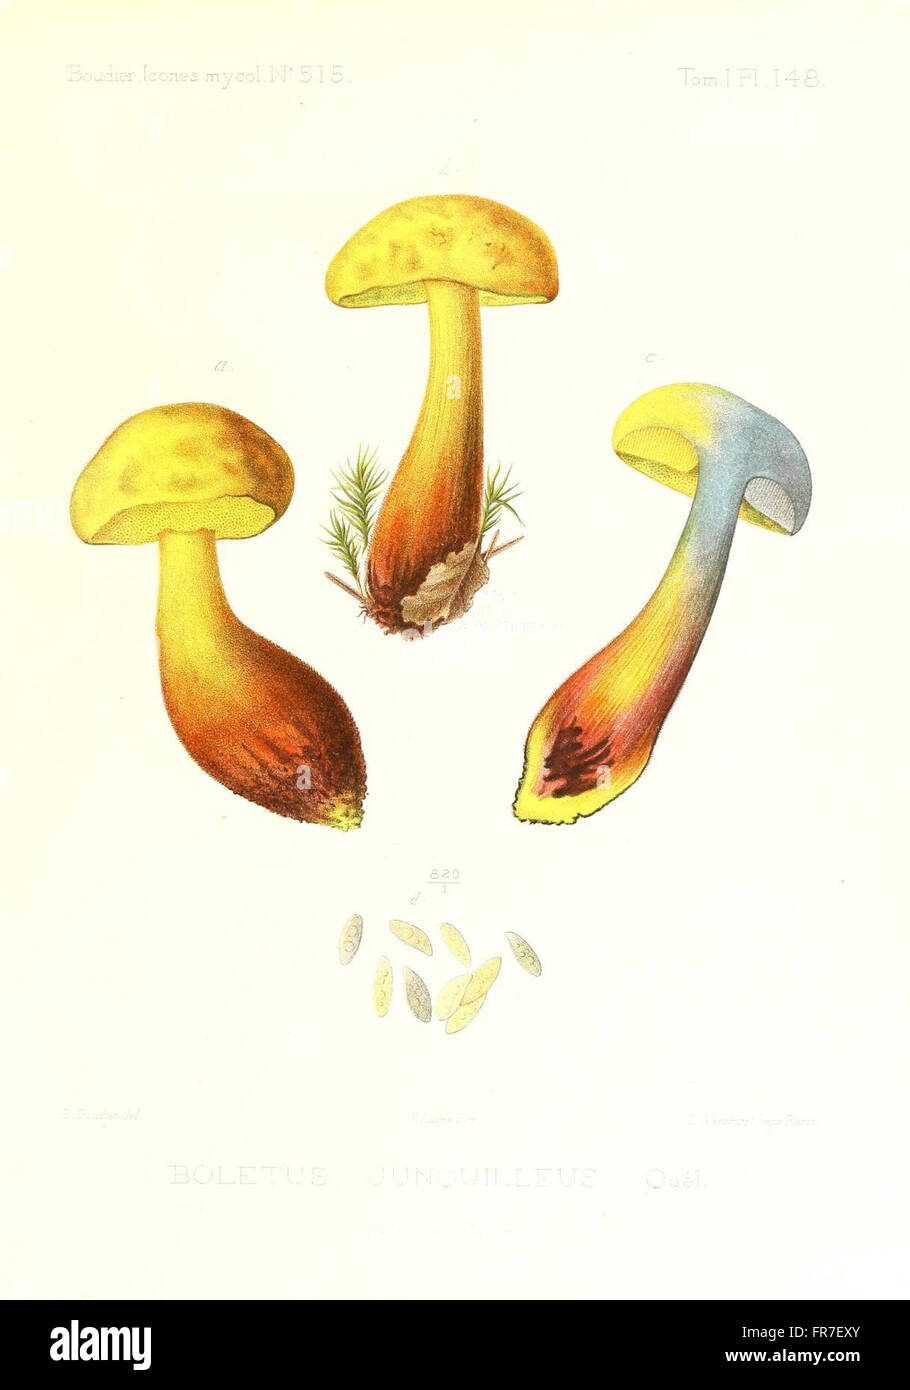 Icones mycologicC3A6, ou Iconographie des champignons de France principalement Discomycetes (Pl. 148) Stock Photo